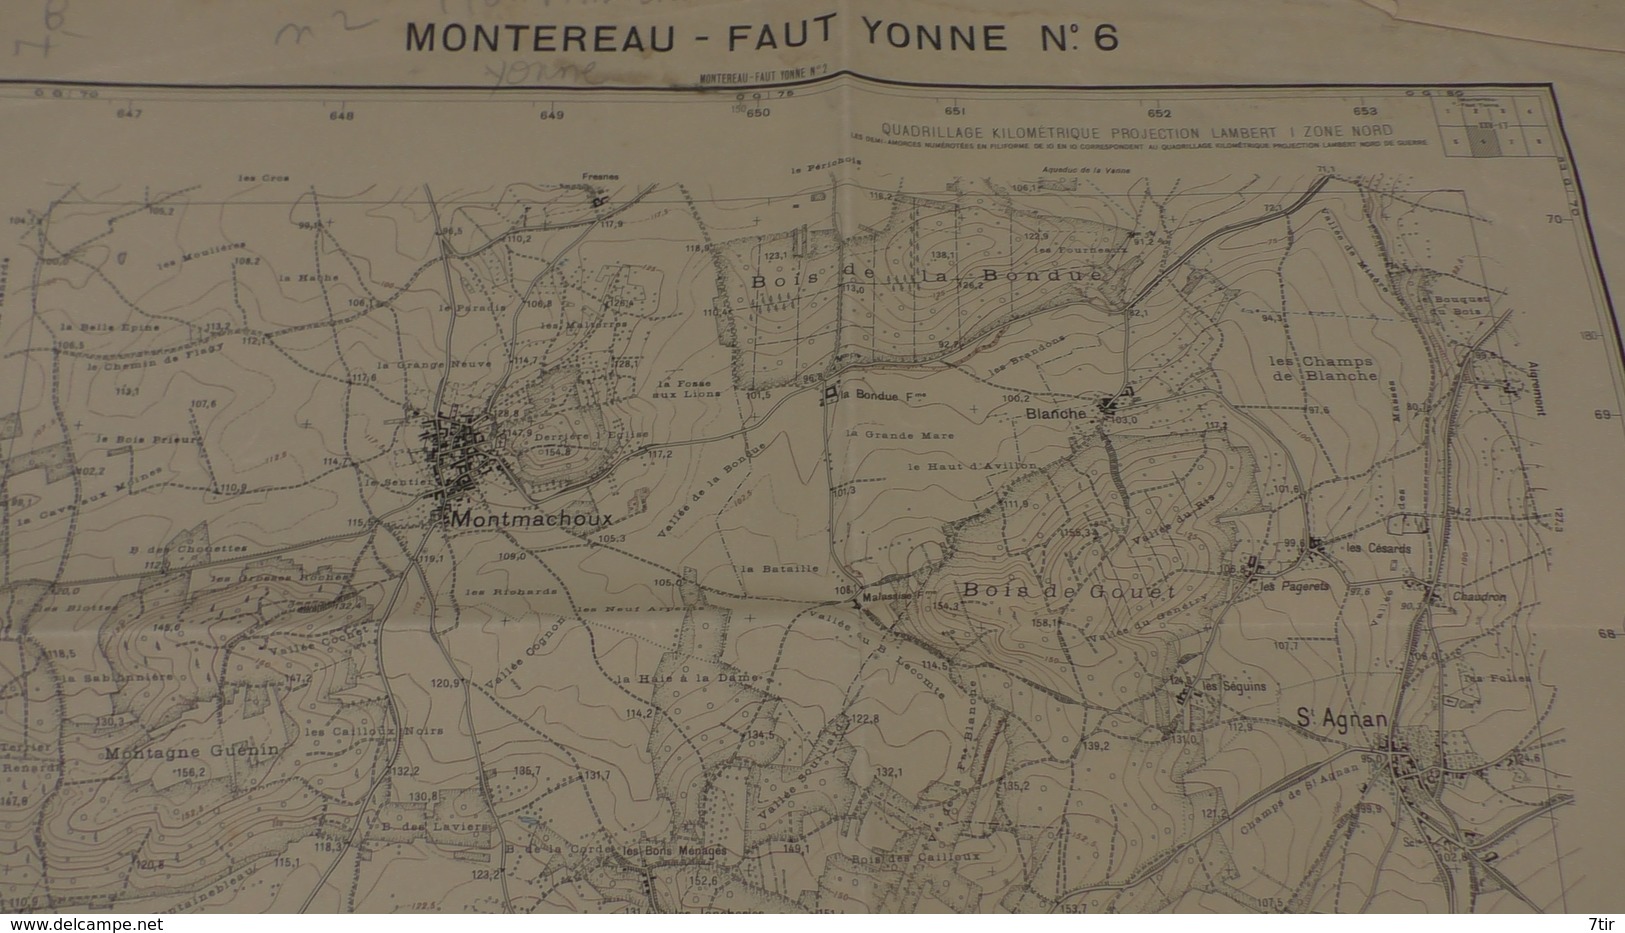 VALLERY BLENNES VILLECHASSON CORNOY VOULX  LES CHAPELLES BONVAL DIANT MONTMACHOUX ST AGNAN ( JANVIER 1946 1/20000 ) - Geographical Maps